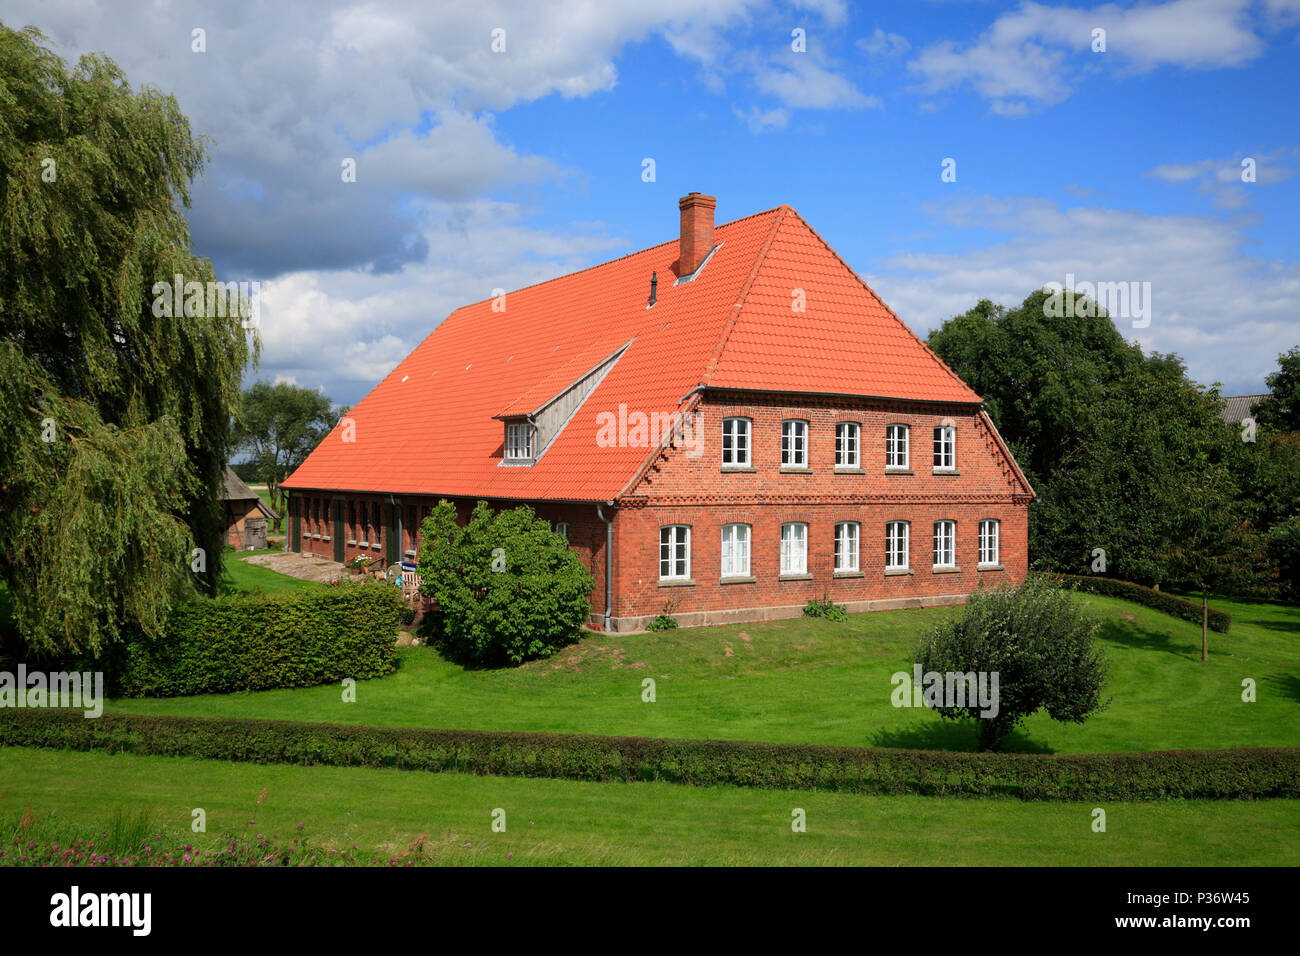 Farmers house in Konau, Amt Neuhaus, Lower Saxony, Germany Stock Photo